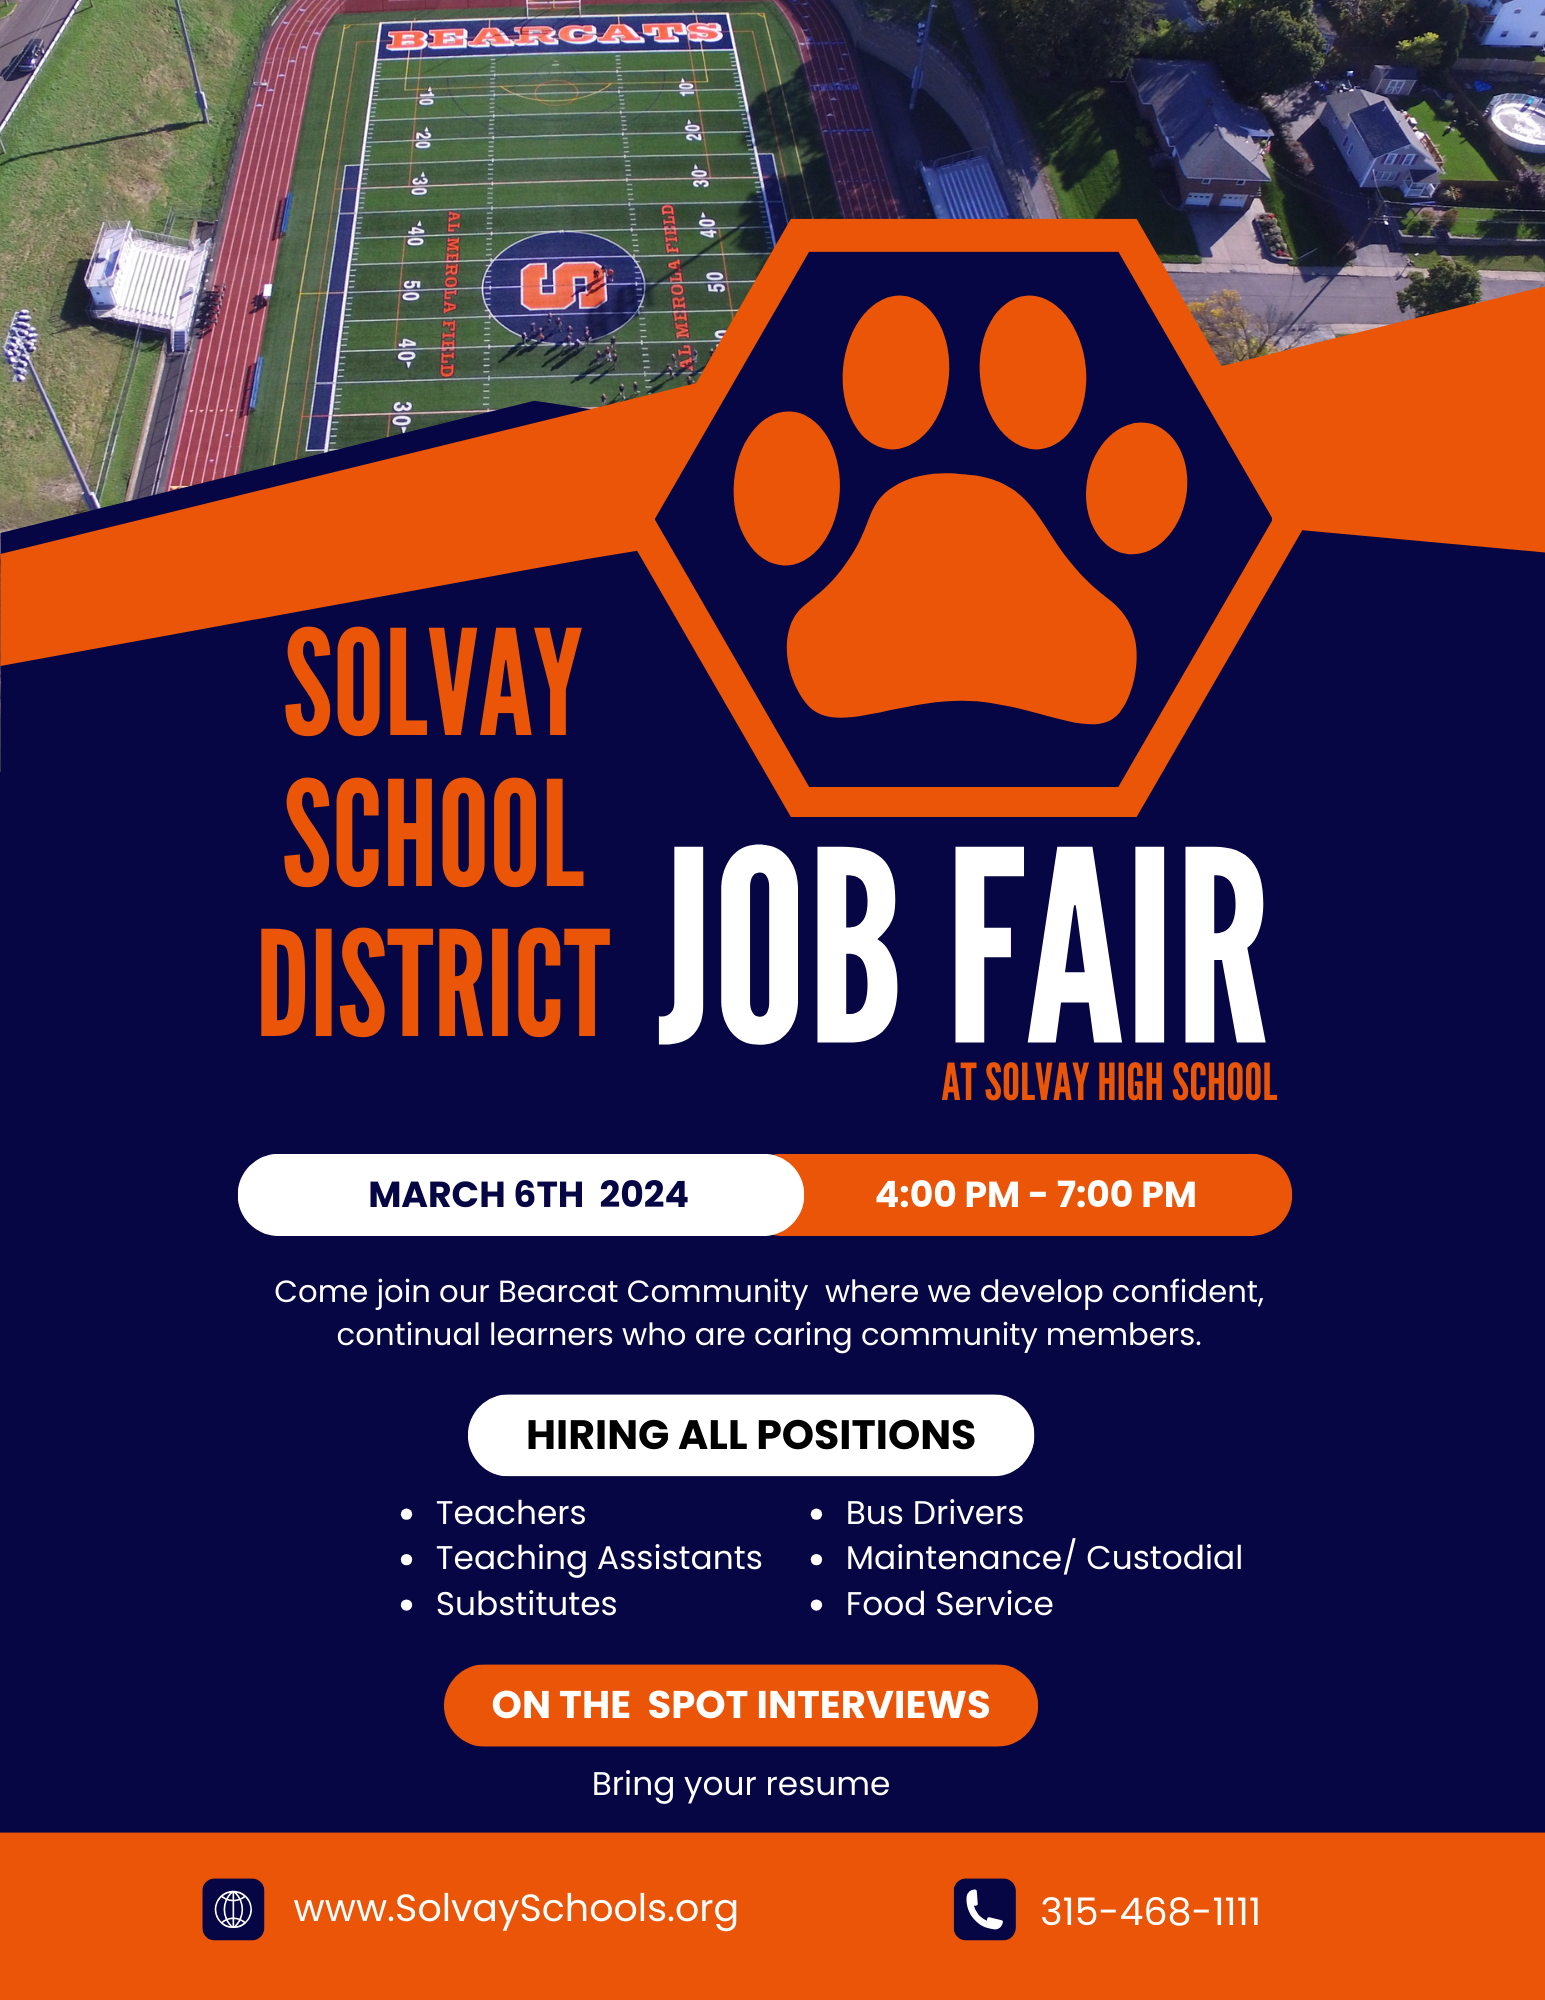 job fair march 6 4-7:30@ Solvay HS